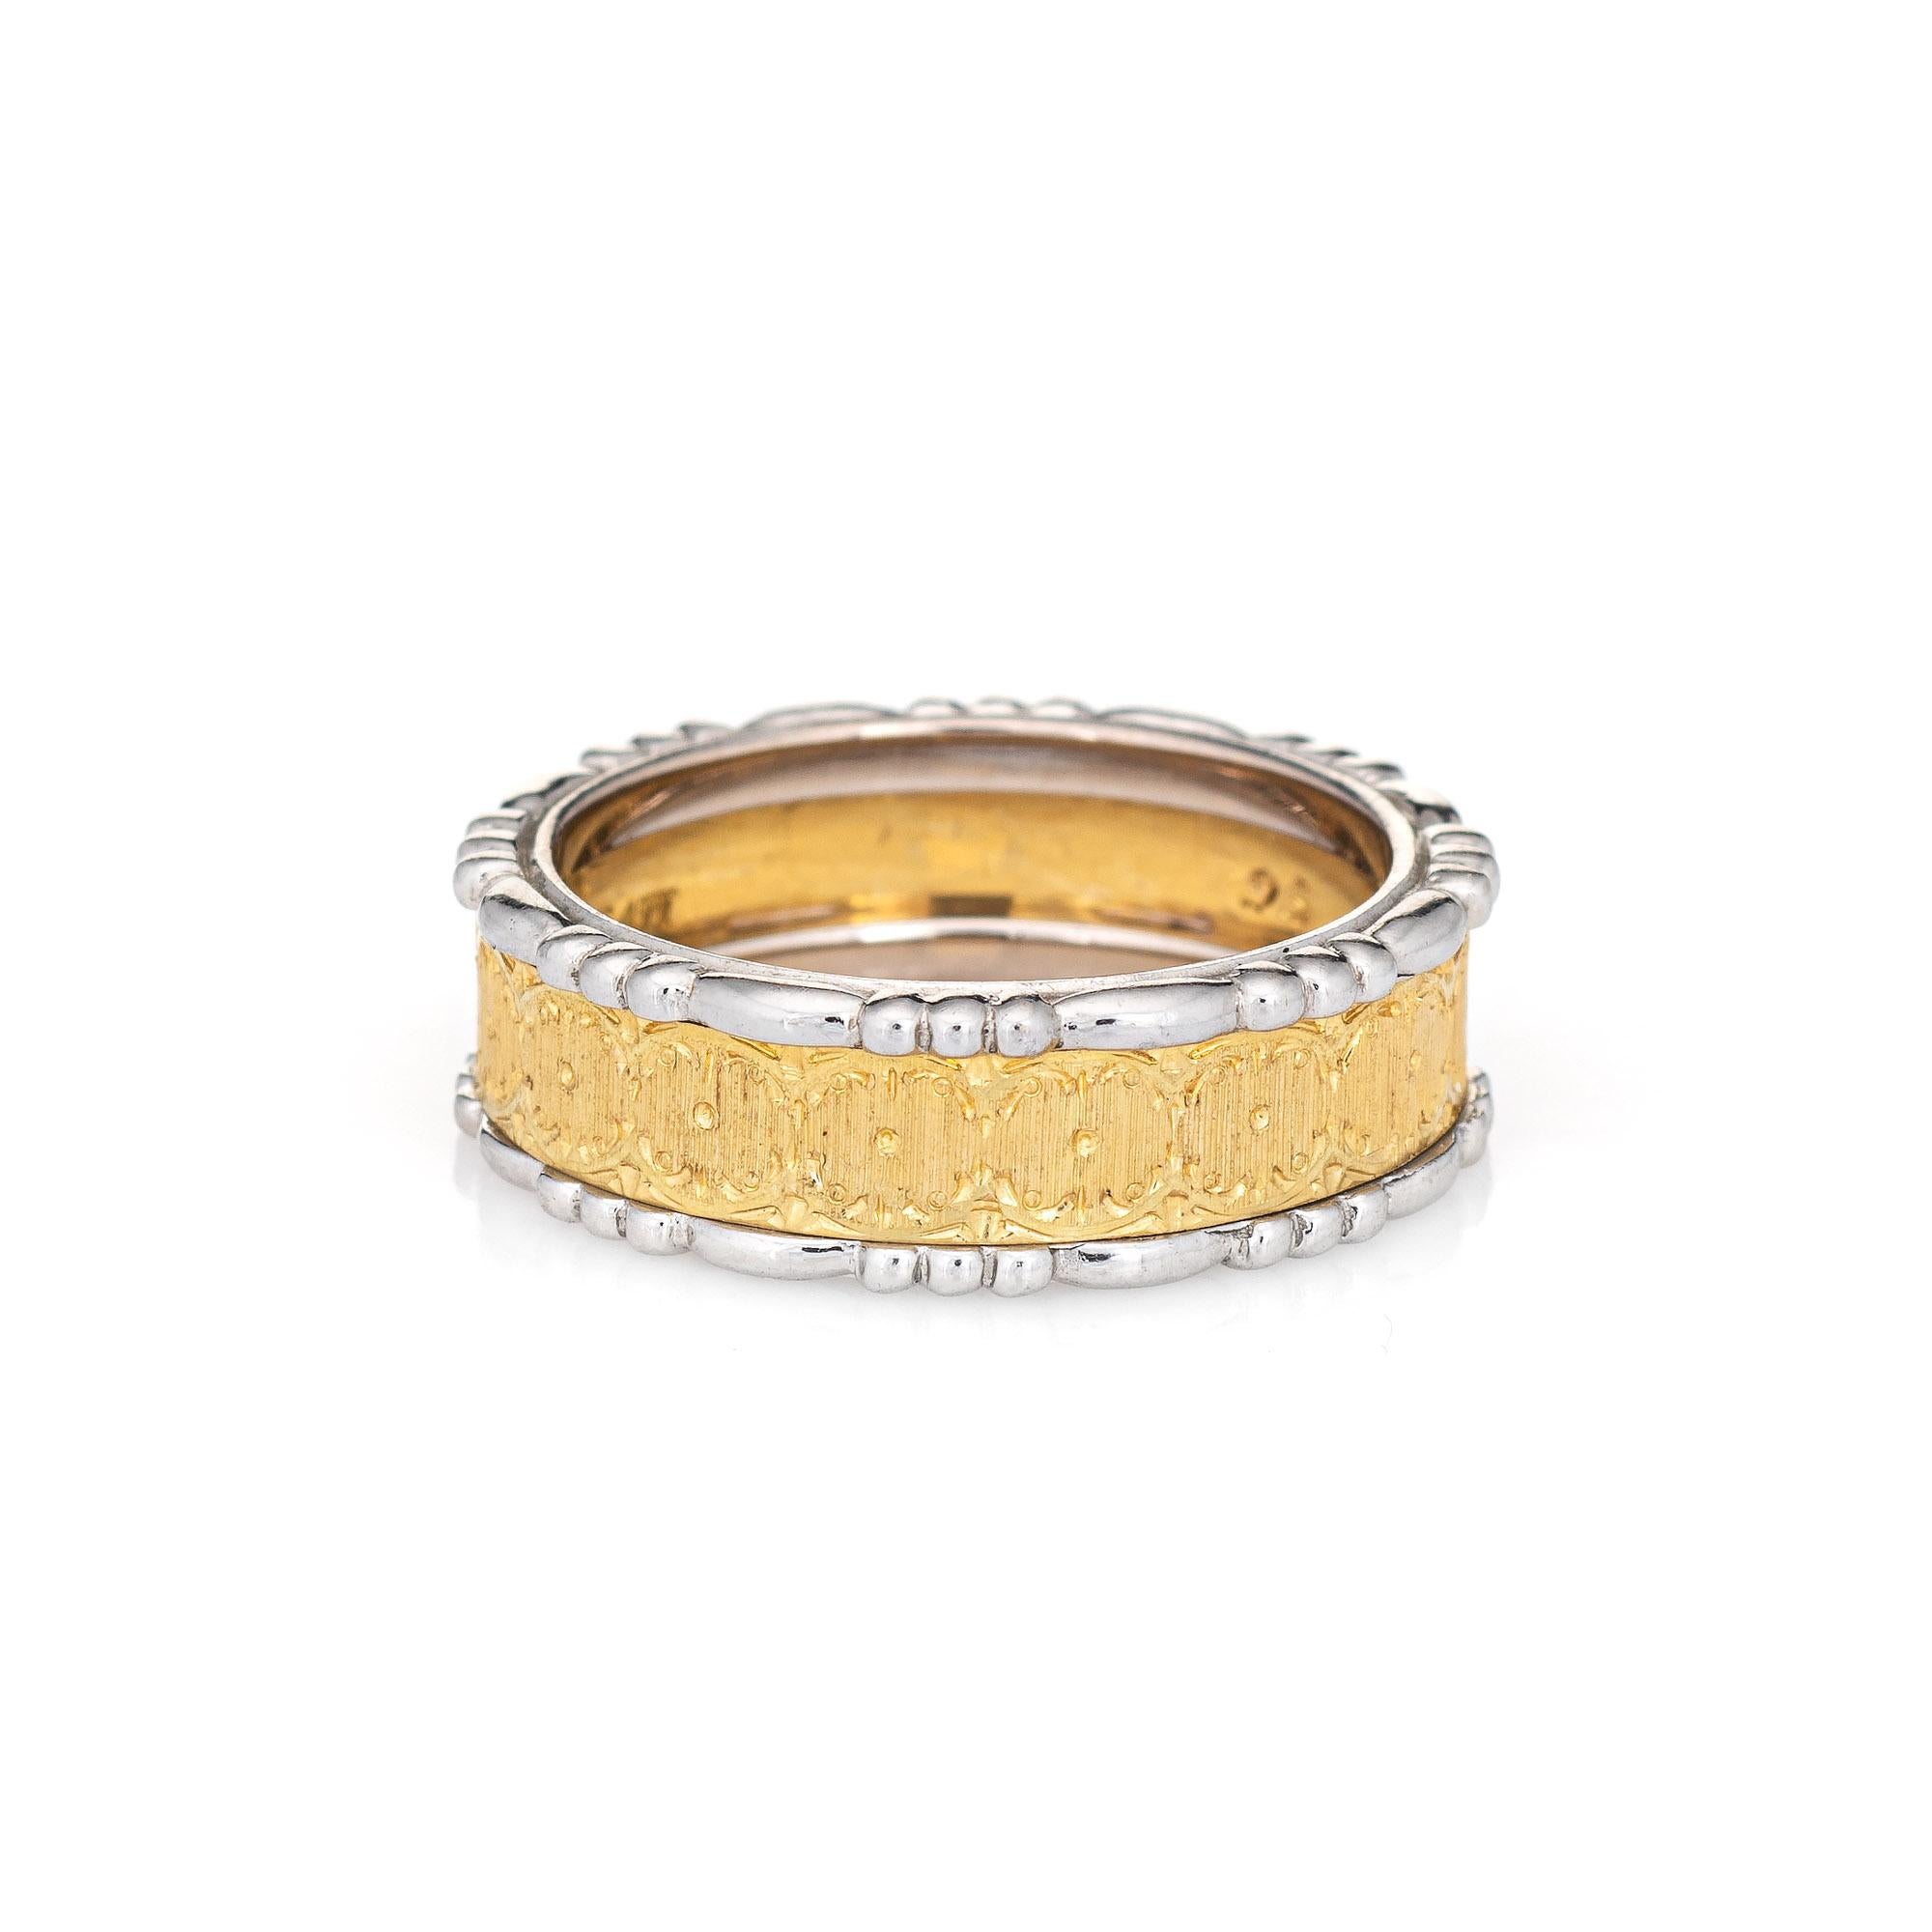 Nachlass Buccellati Prestigio strukturierte Band in 18k Gelb- und Weißgold gefertigt.  

Das Band weist handgravierte, strukturierte Golddetails im Gelbgoldbereich auf, ein unverkennbares Markenzeichen von Buccellati-Schmuckstücken, und wird von